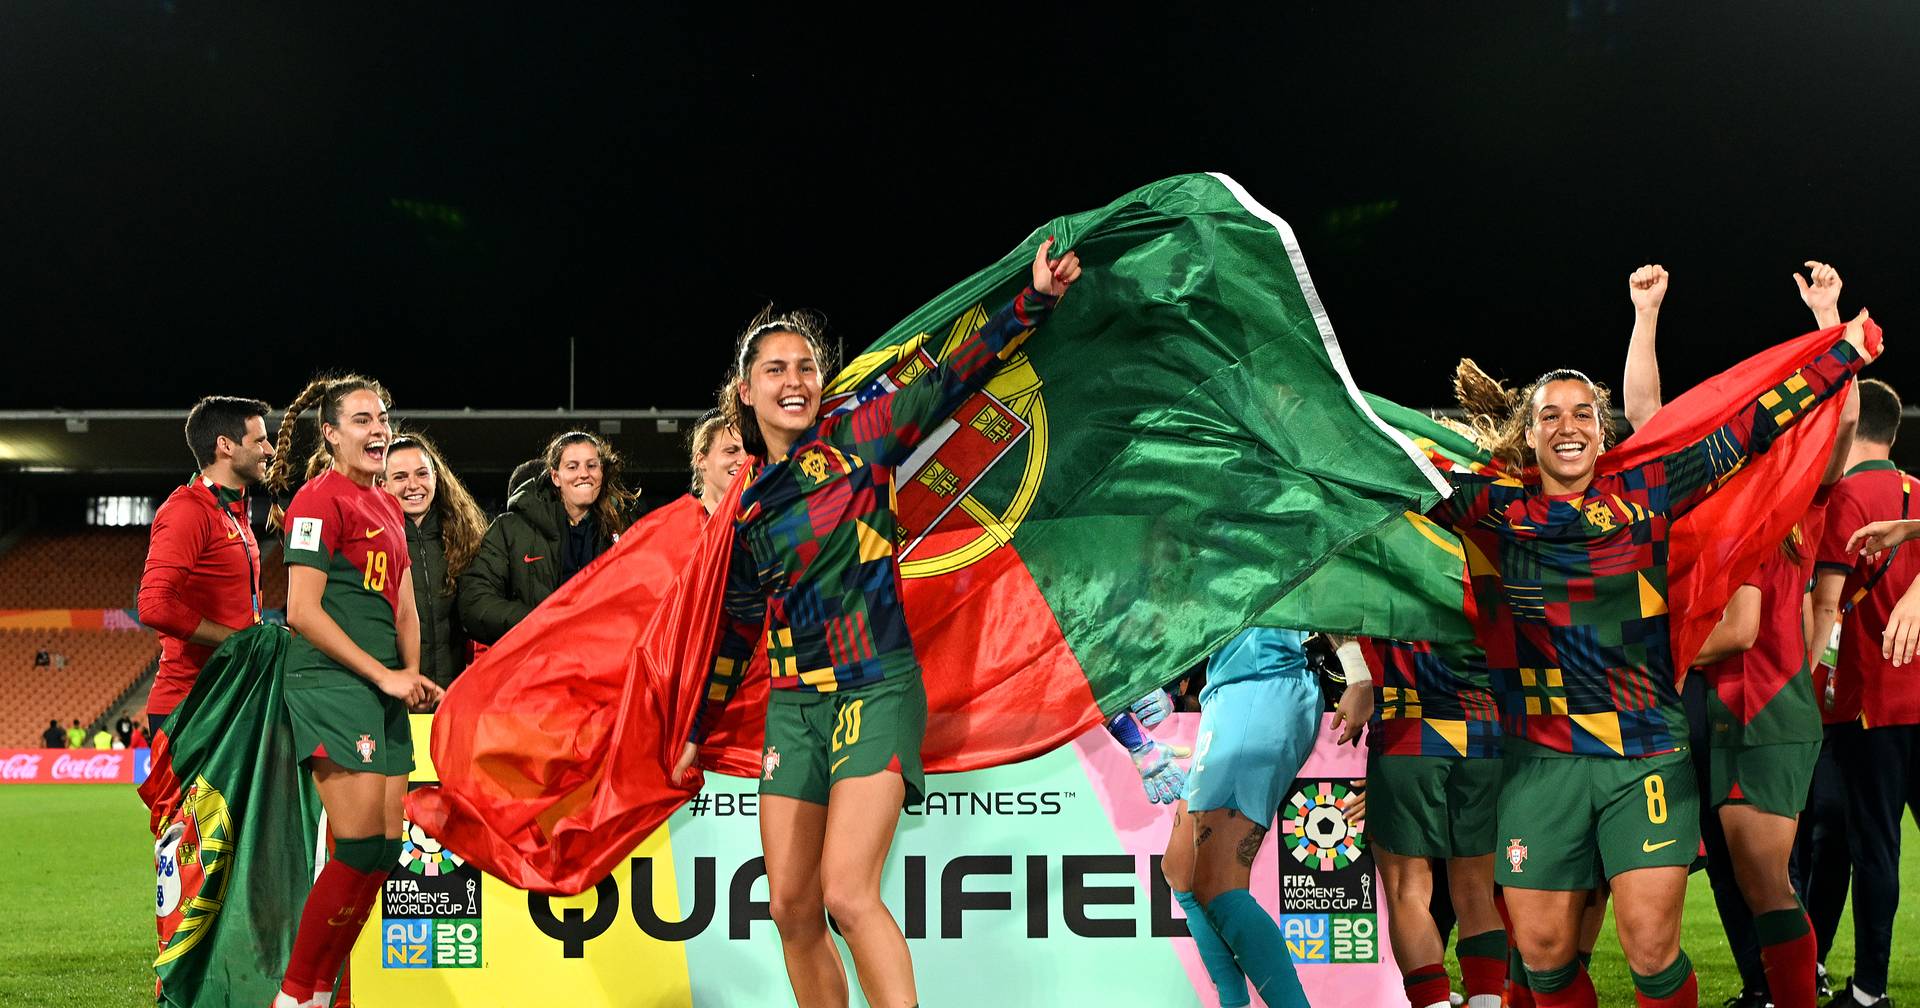 Seleção feminina regressa a Lisboa após participação no Mundial - SIC  Notícias